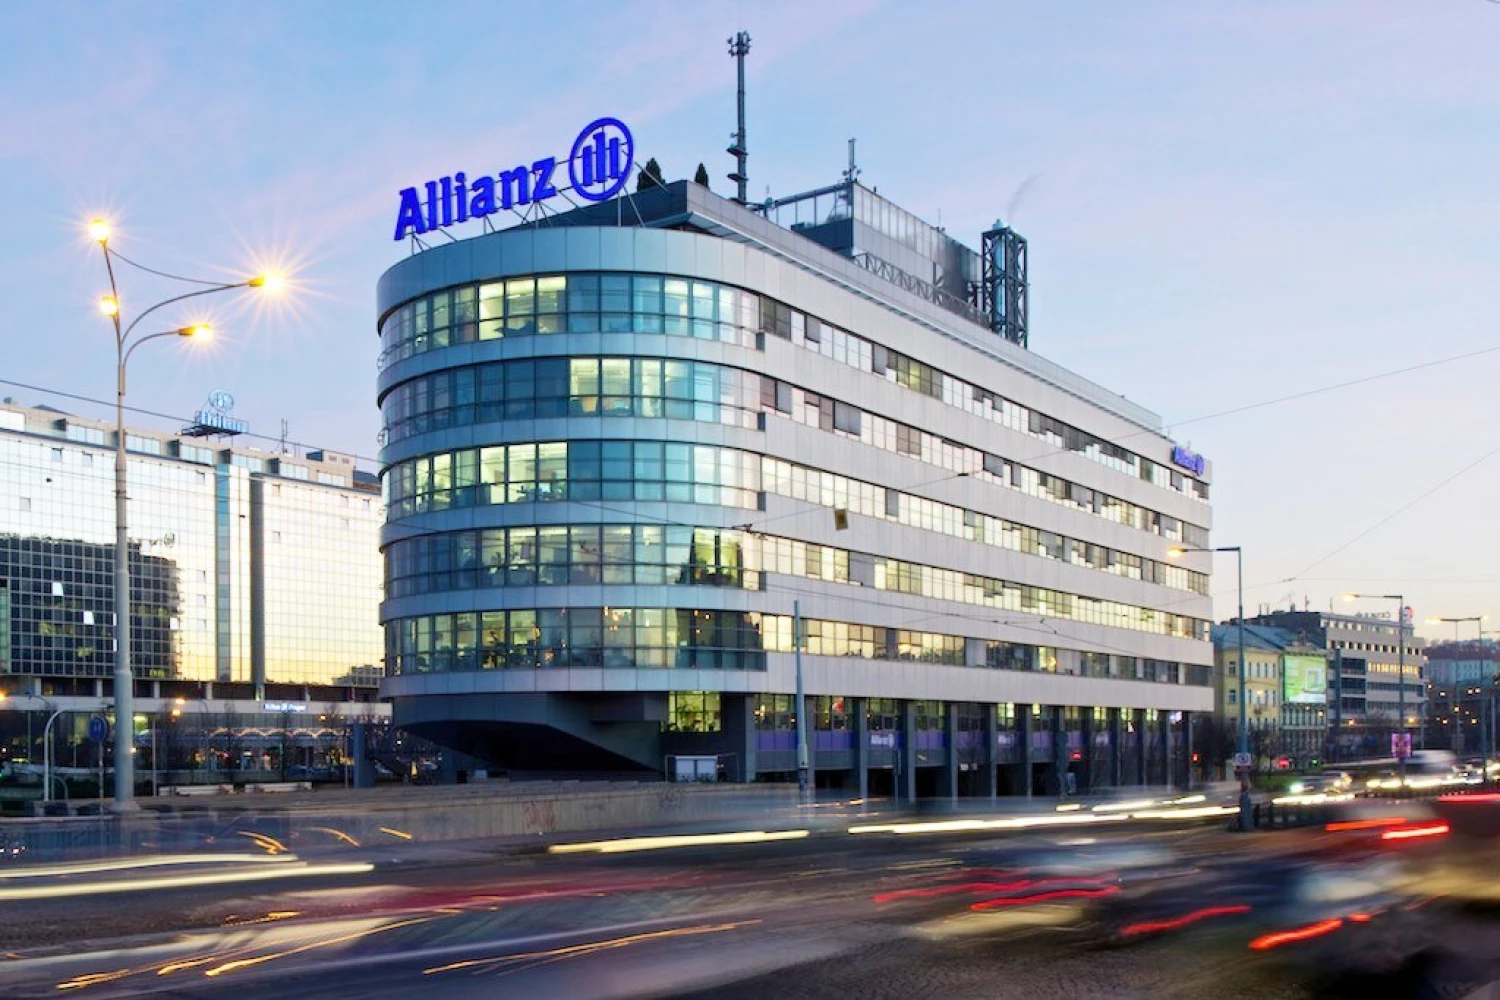 Allianz zvýšila zisk na 2,5 miliardy eur. Výsledky předčily očekávání